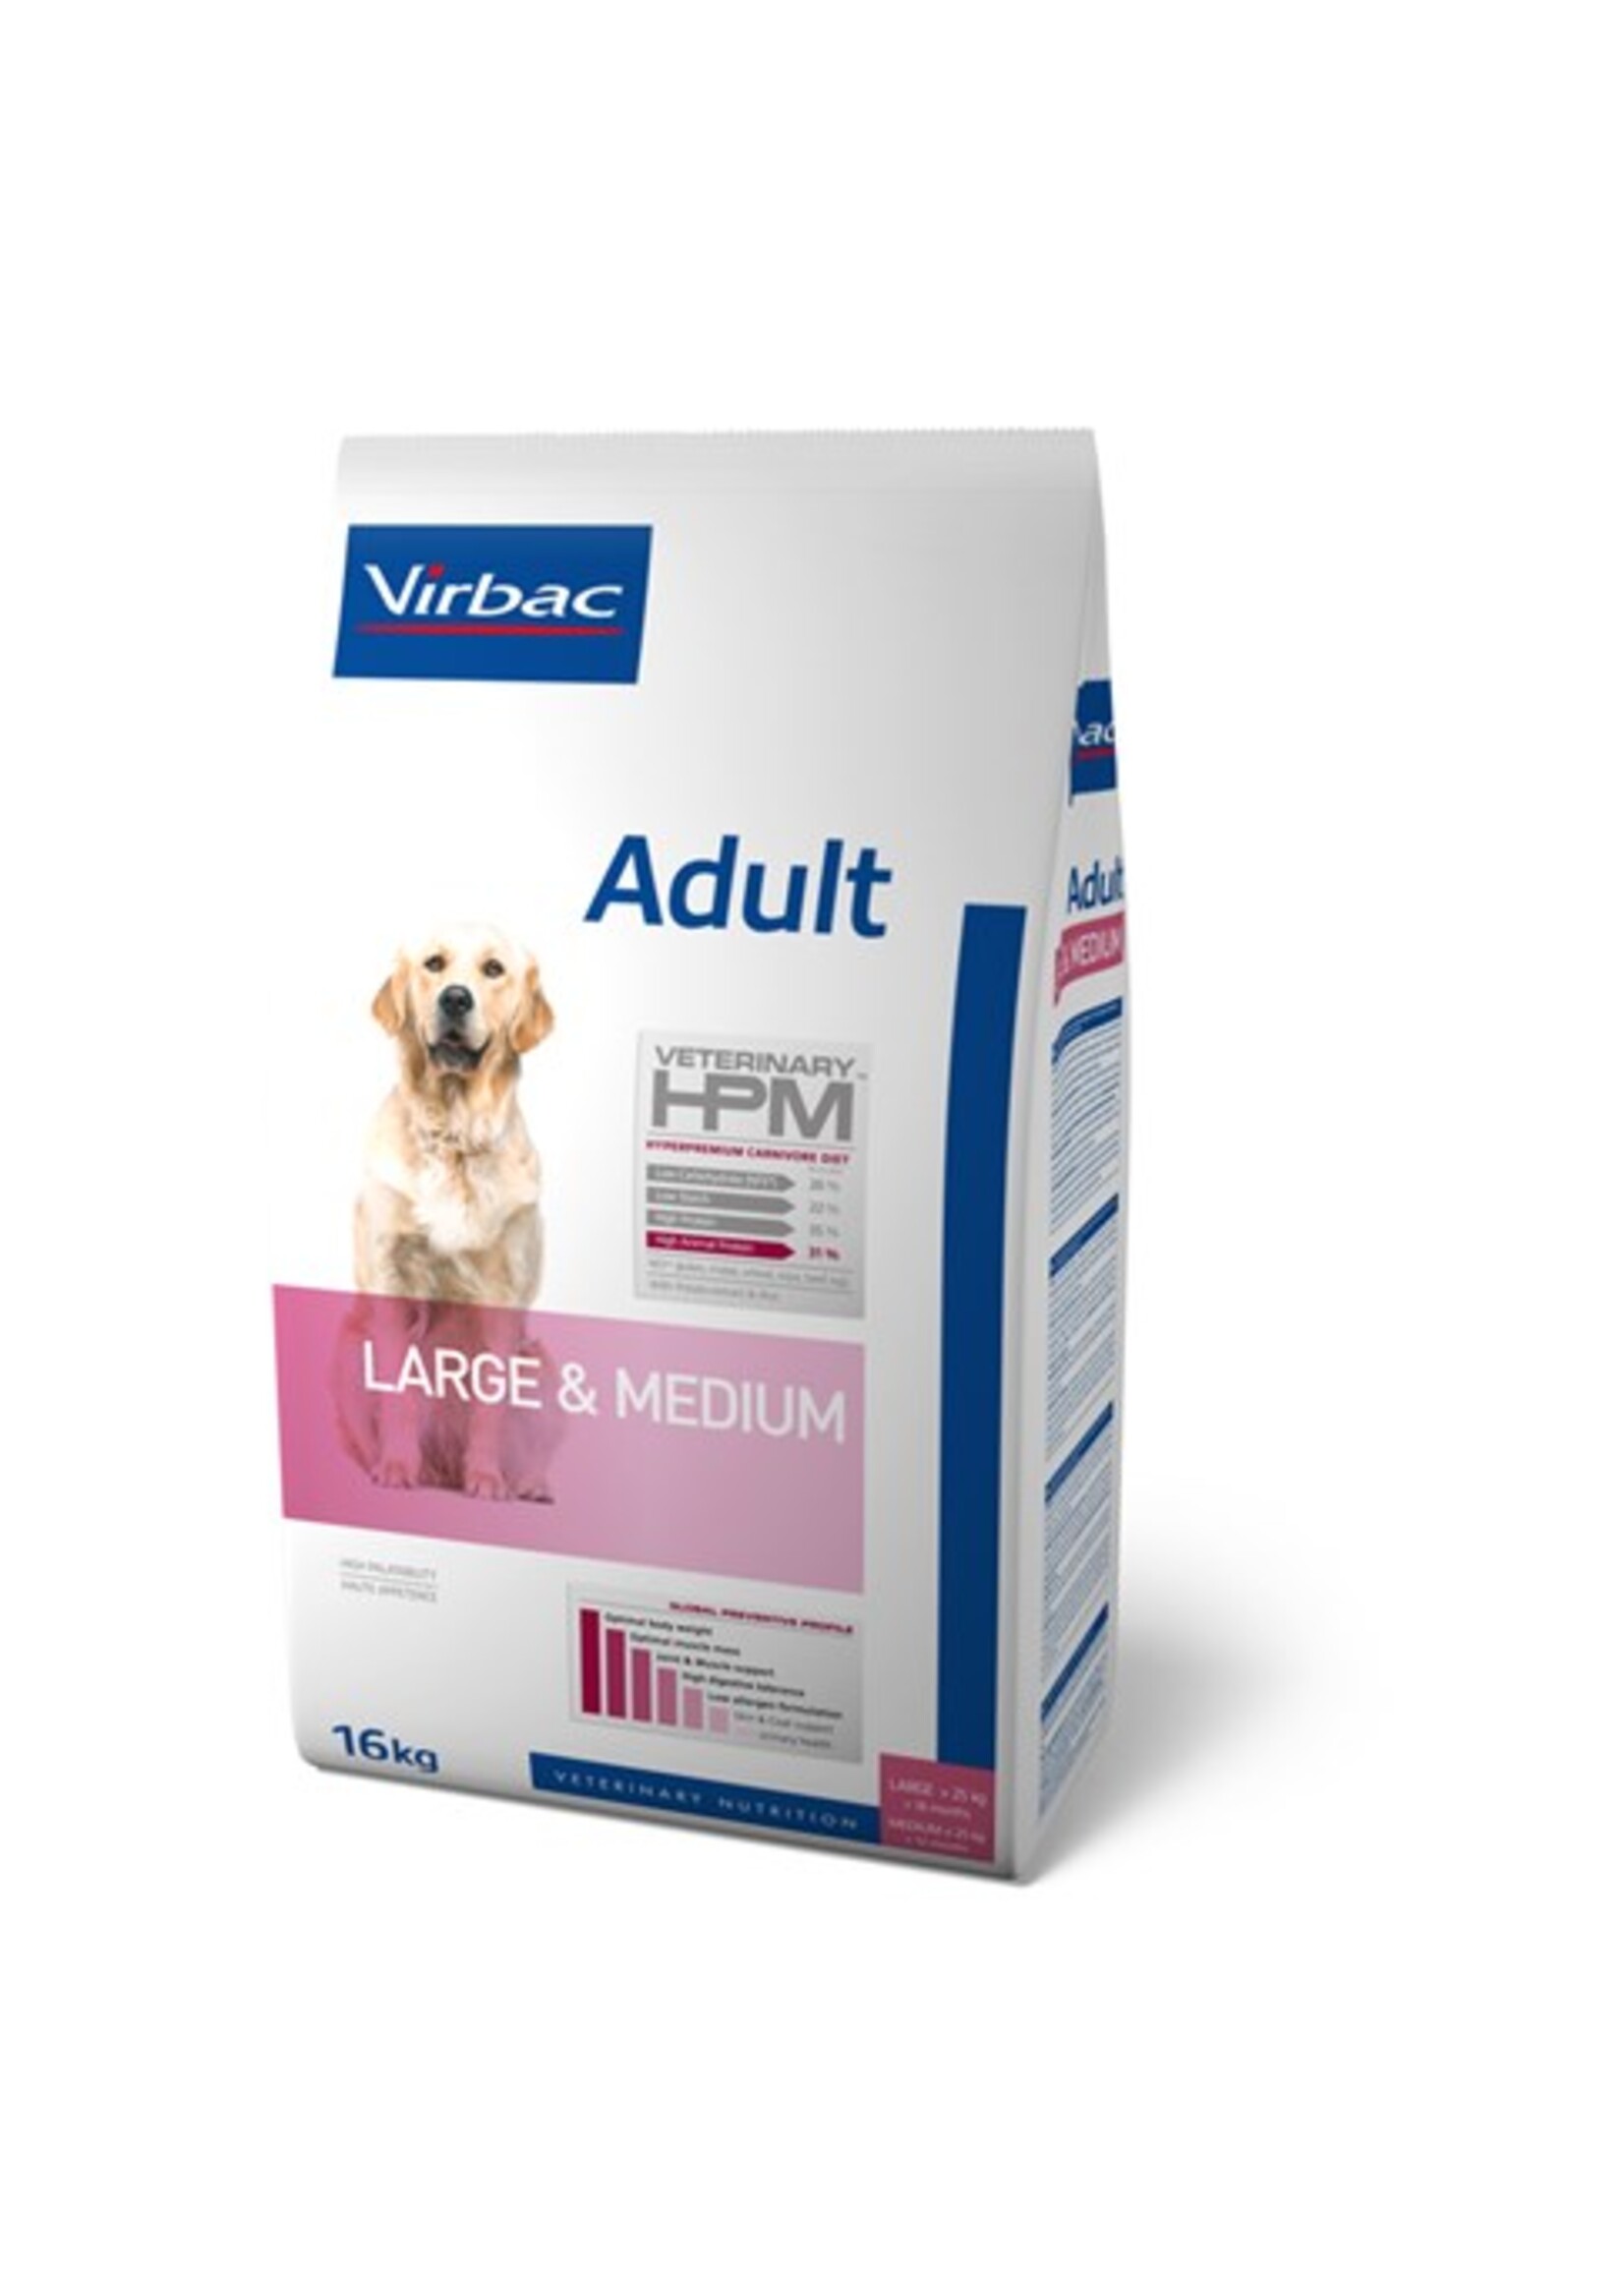 Virbac Virbac Hpm Hund Adult Large/medium Breed 16kg